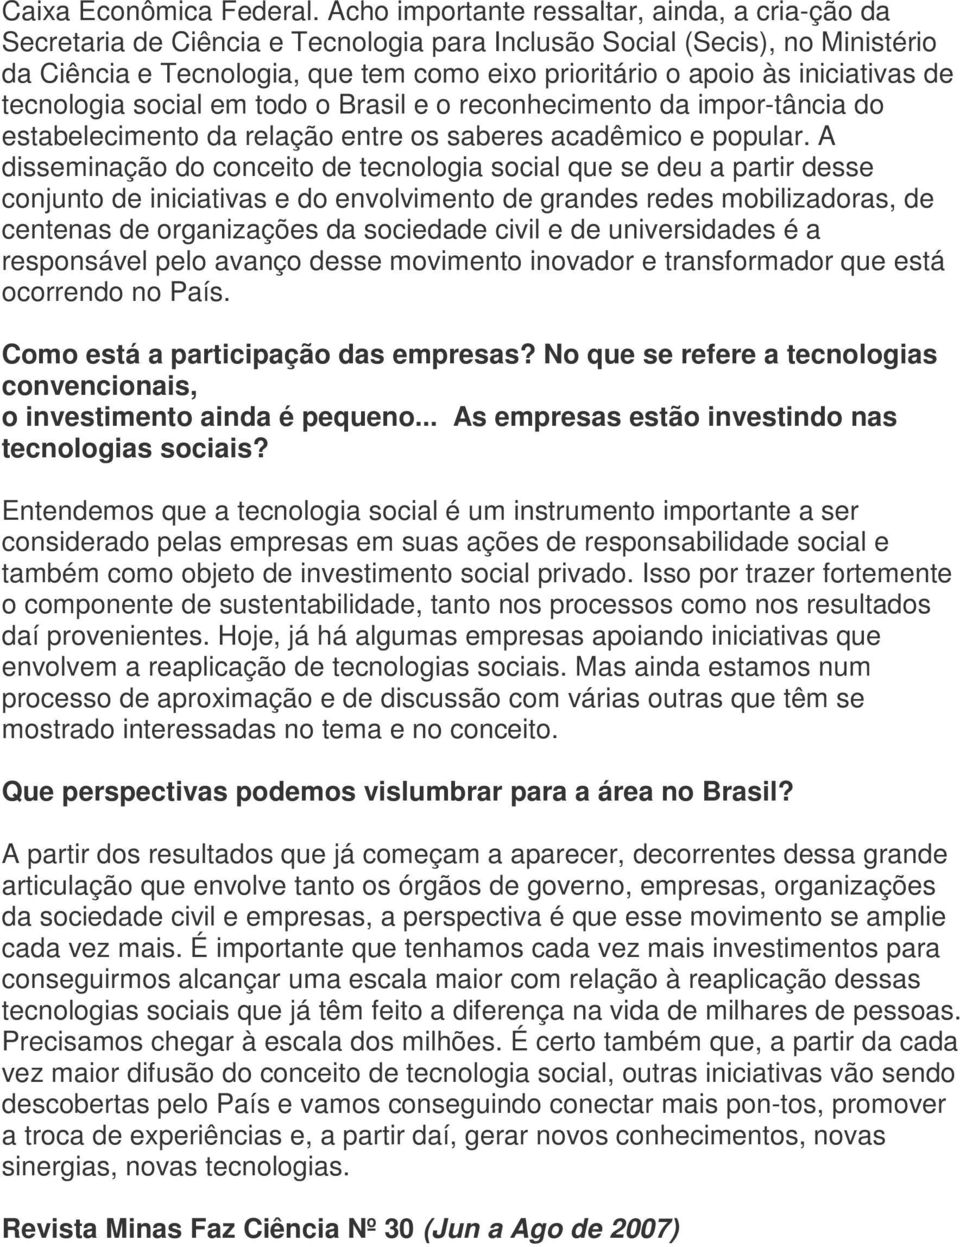 iniciativas de tecnologia social em todo o Brasil e o reconhecimento da impor-tância do estabelecimento da relação entre os saberes acadêmico e popular.